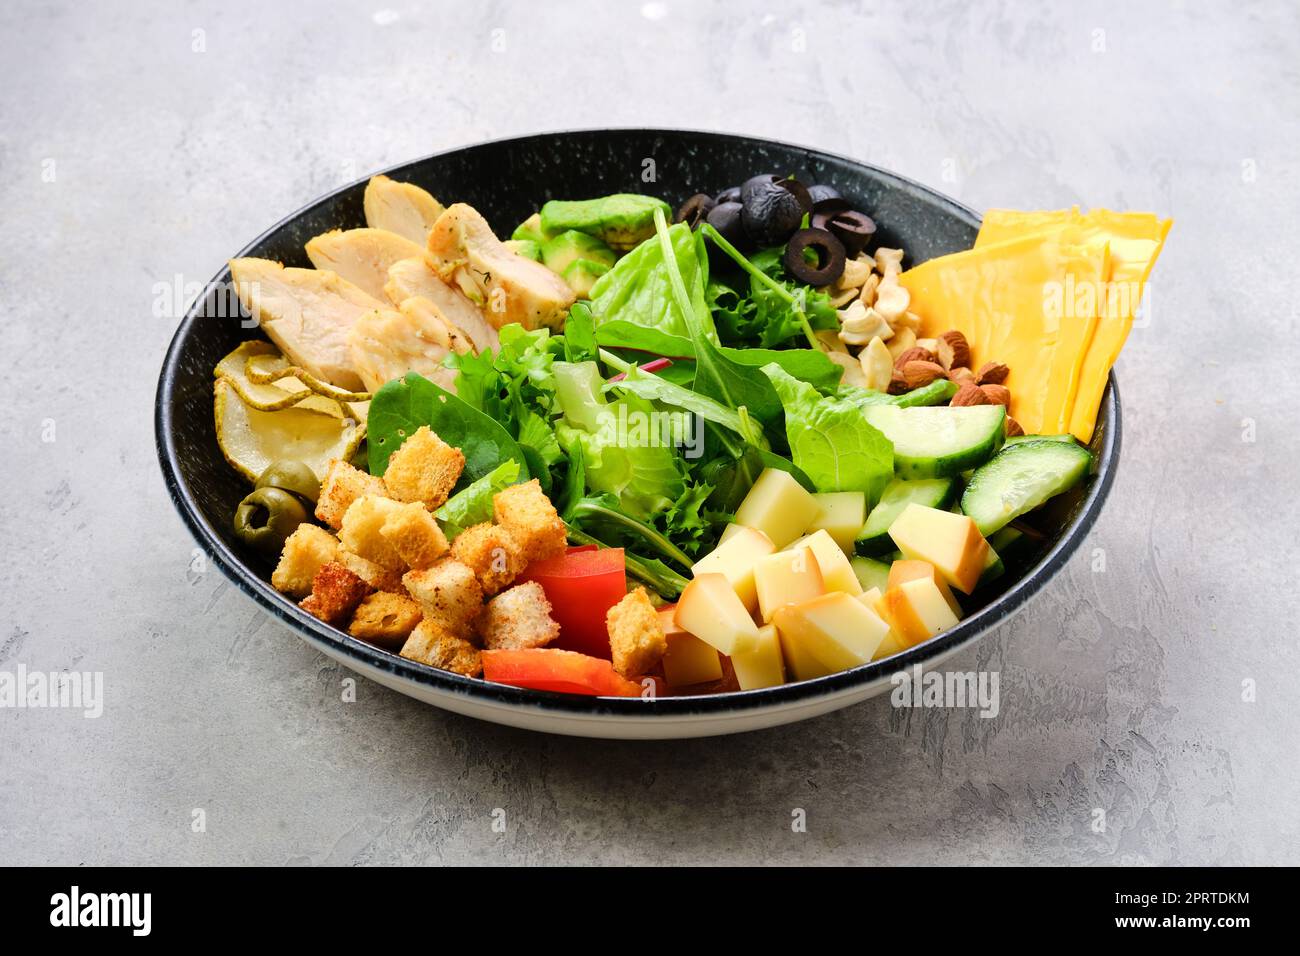 Schüssel mit Salatmischung und verschiedenen Snacks Stockfoto